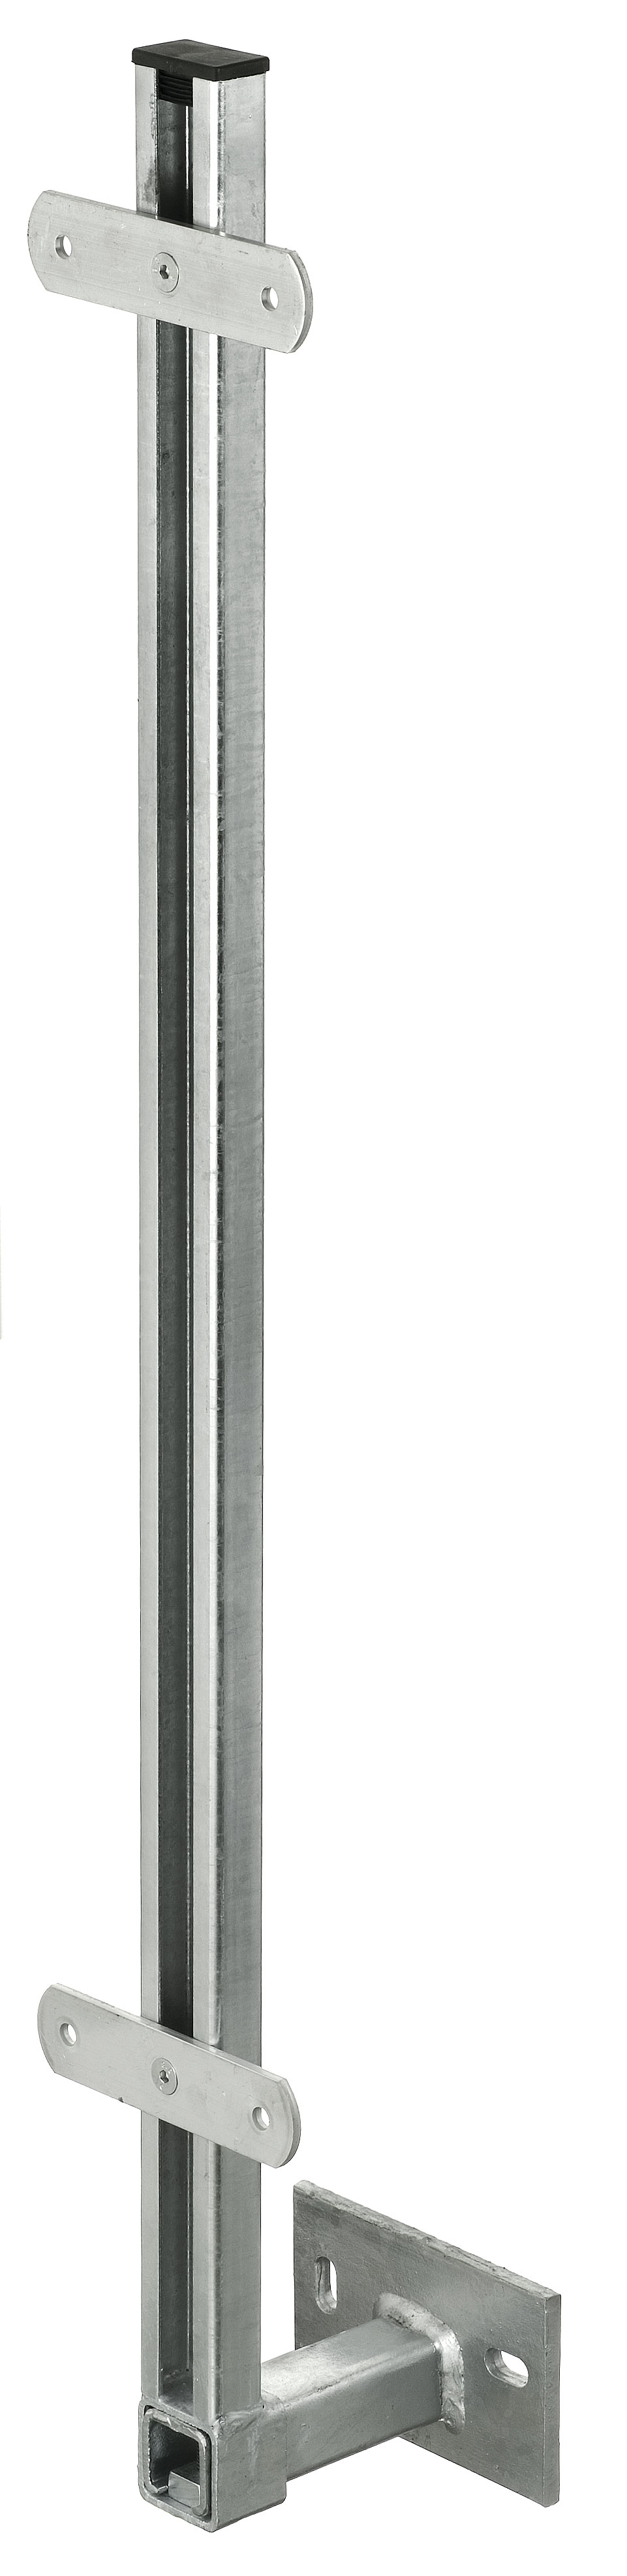 Geländerstützen GSP, C-Profil zum Andübeln mit Kröpfung von 30 - 200 mm, Höhe 1000 mm, incl. zwei Alu-Durchgangslaschen